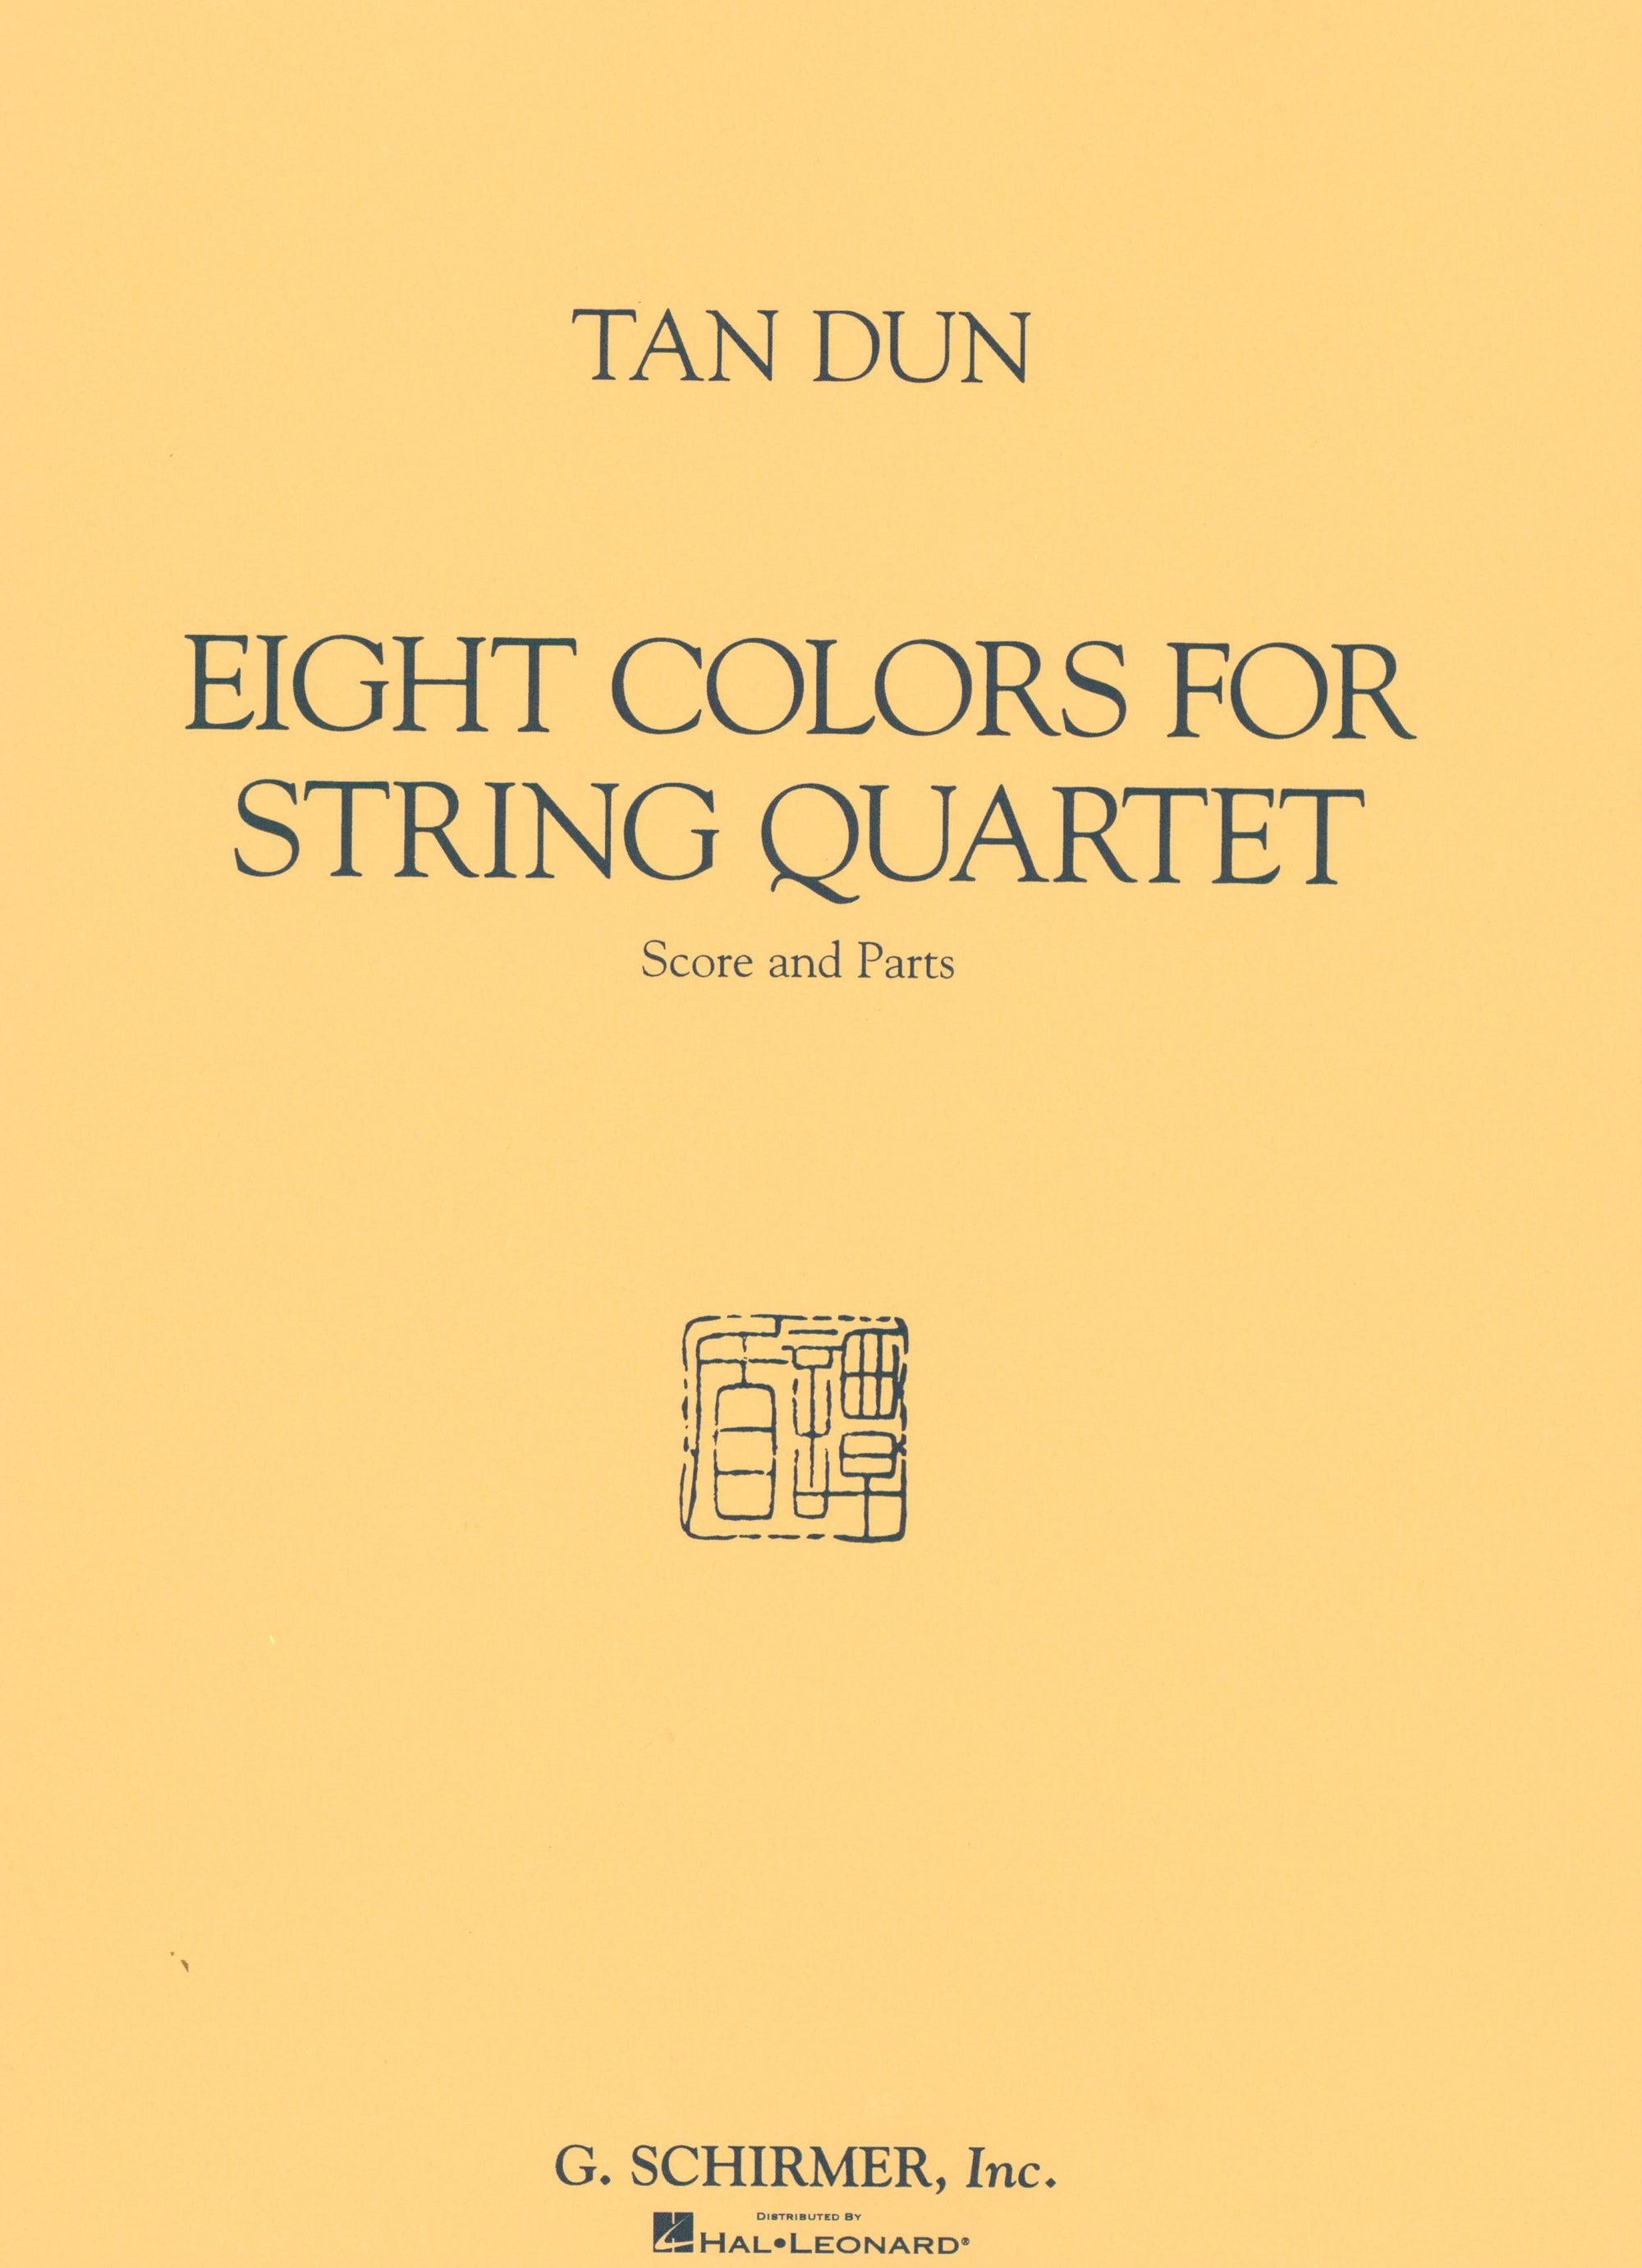 Dun: Eight Colors